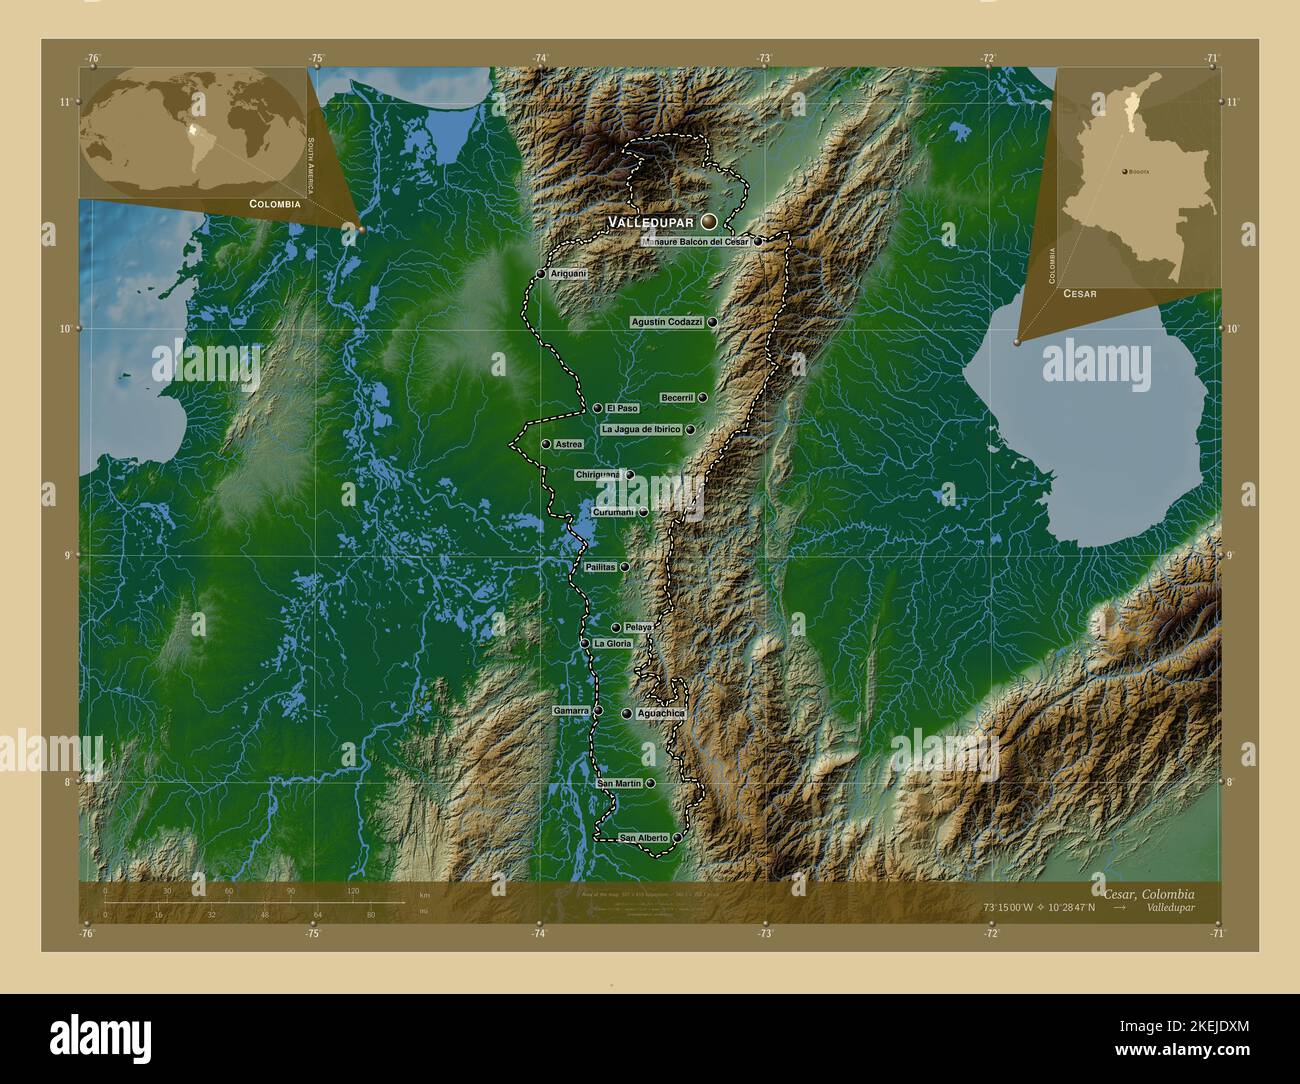 Cesar, département de Colombie. Carte d'altitude en couleur avec lacs et rivières. Lieux et noms des principales villes de la région. Emplacement auxiliaire d'angle Banque D'Images